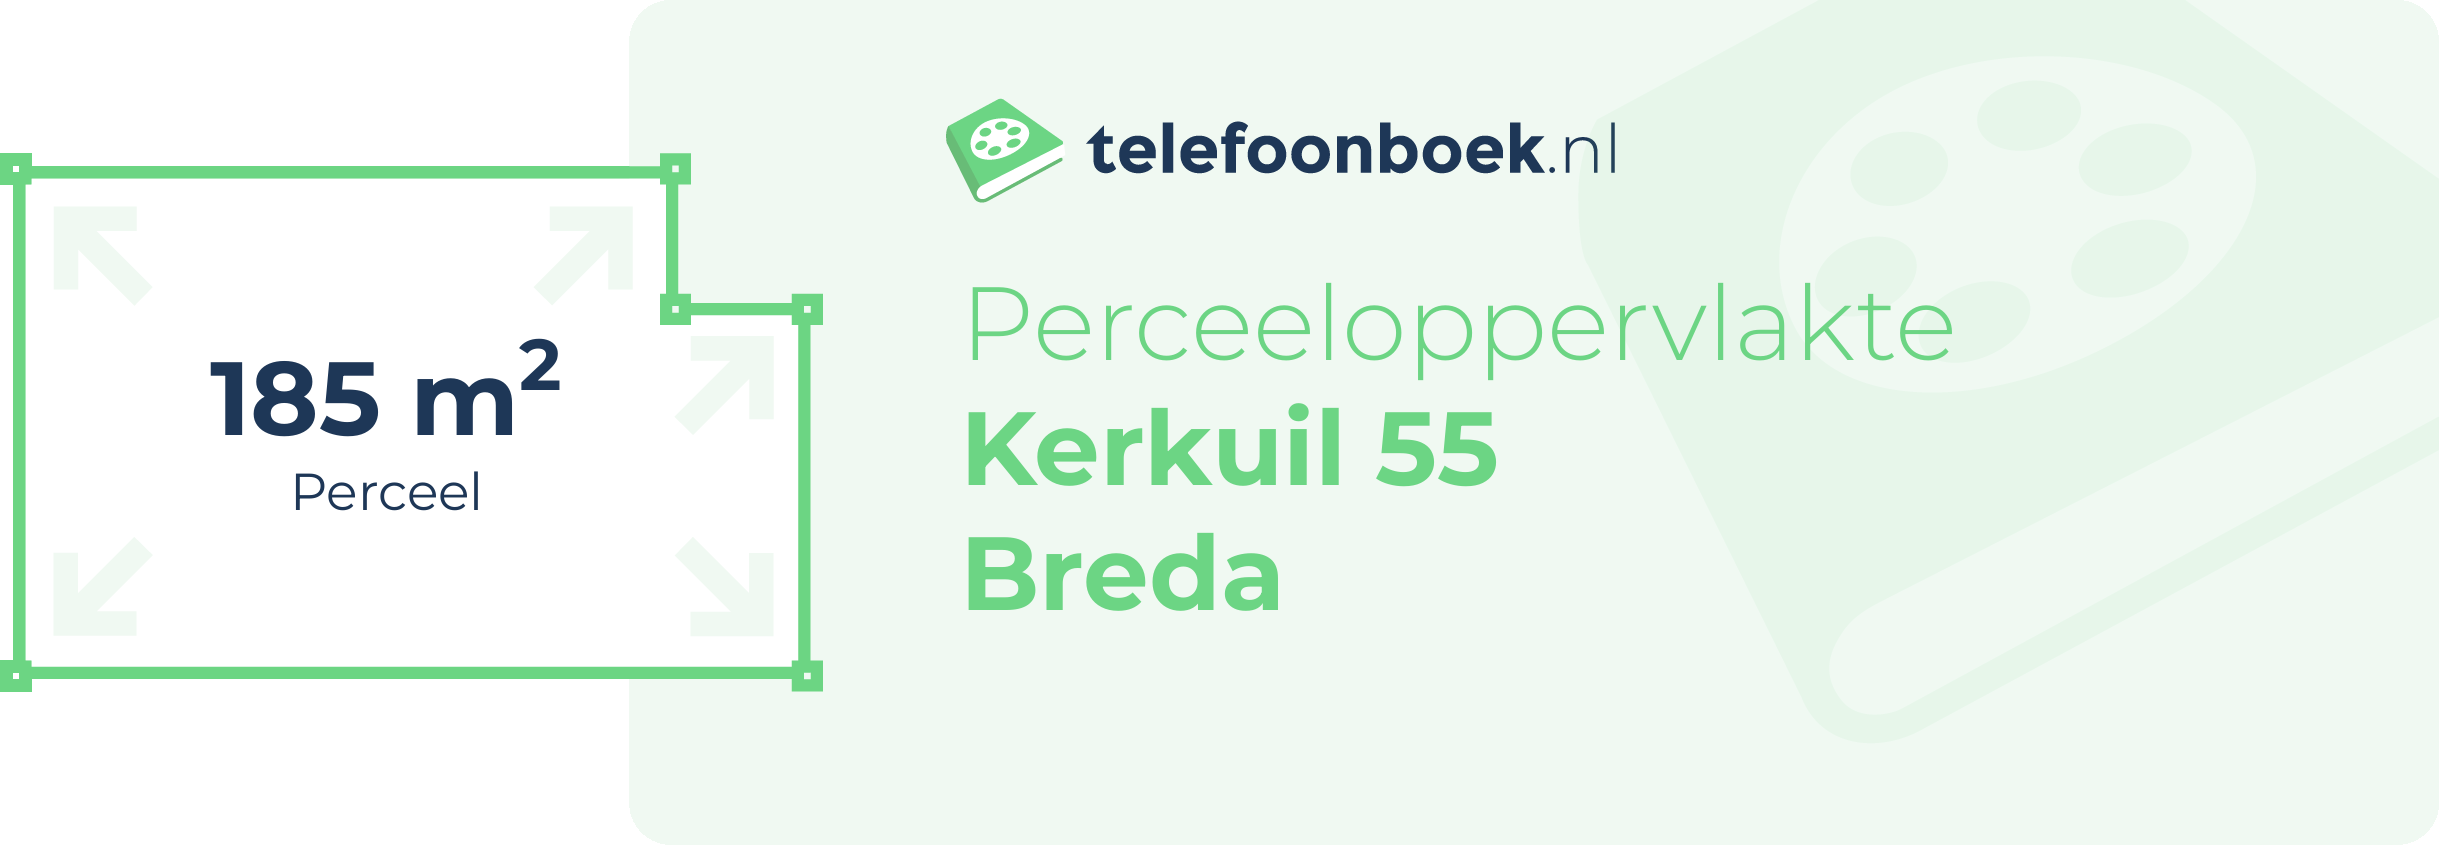 Perceeloppervlakte Kerkuil 55 Breda